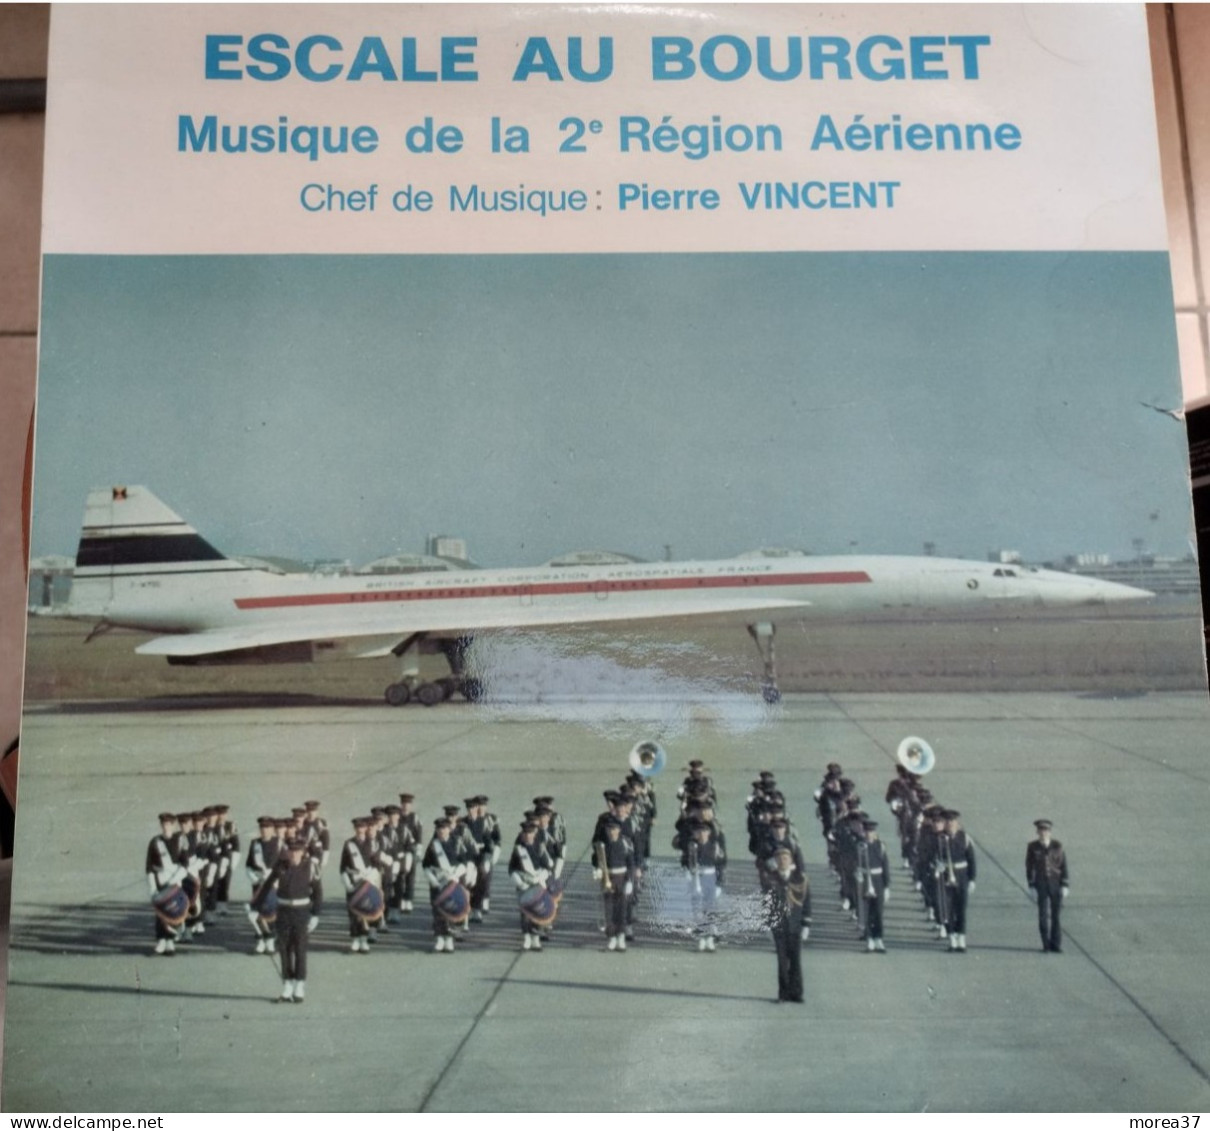 LE CONCORDE   ESCALE AU BOURGET  Musique De La 22e Région Aérienne   CC 76844   (CM4  ) - Other - French Music